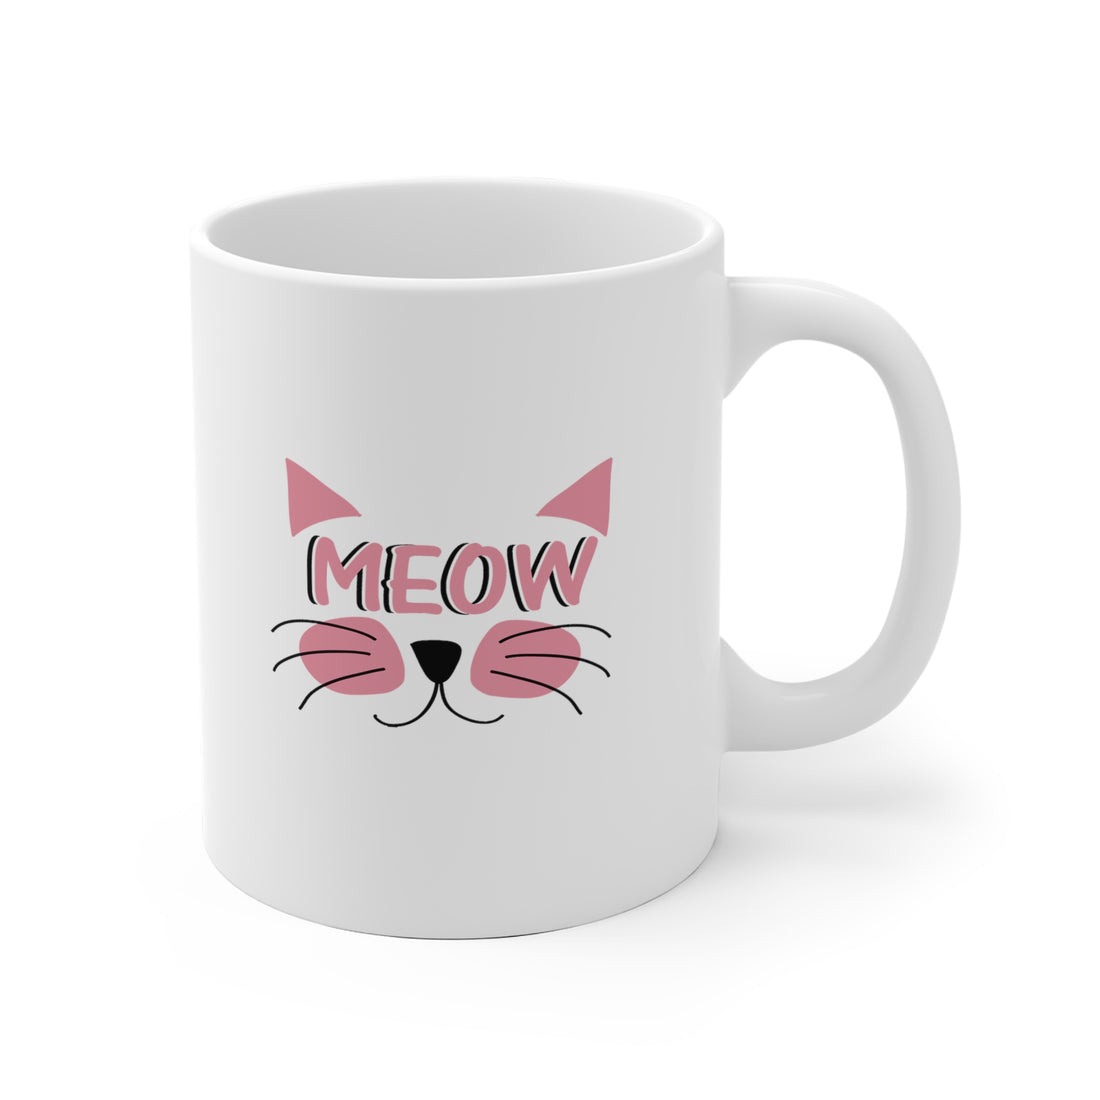 Meow - White Ceramic Mug 2 sizes Available